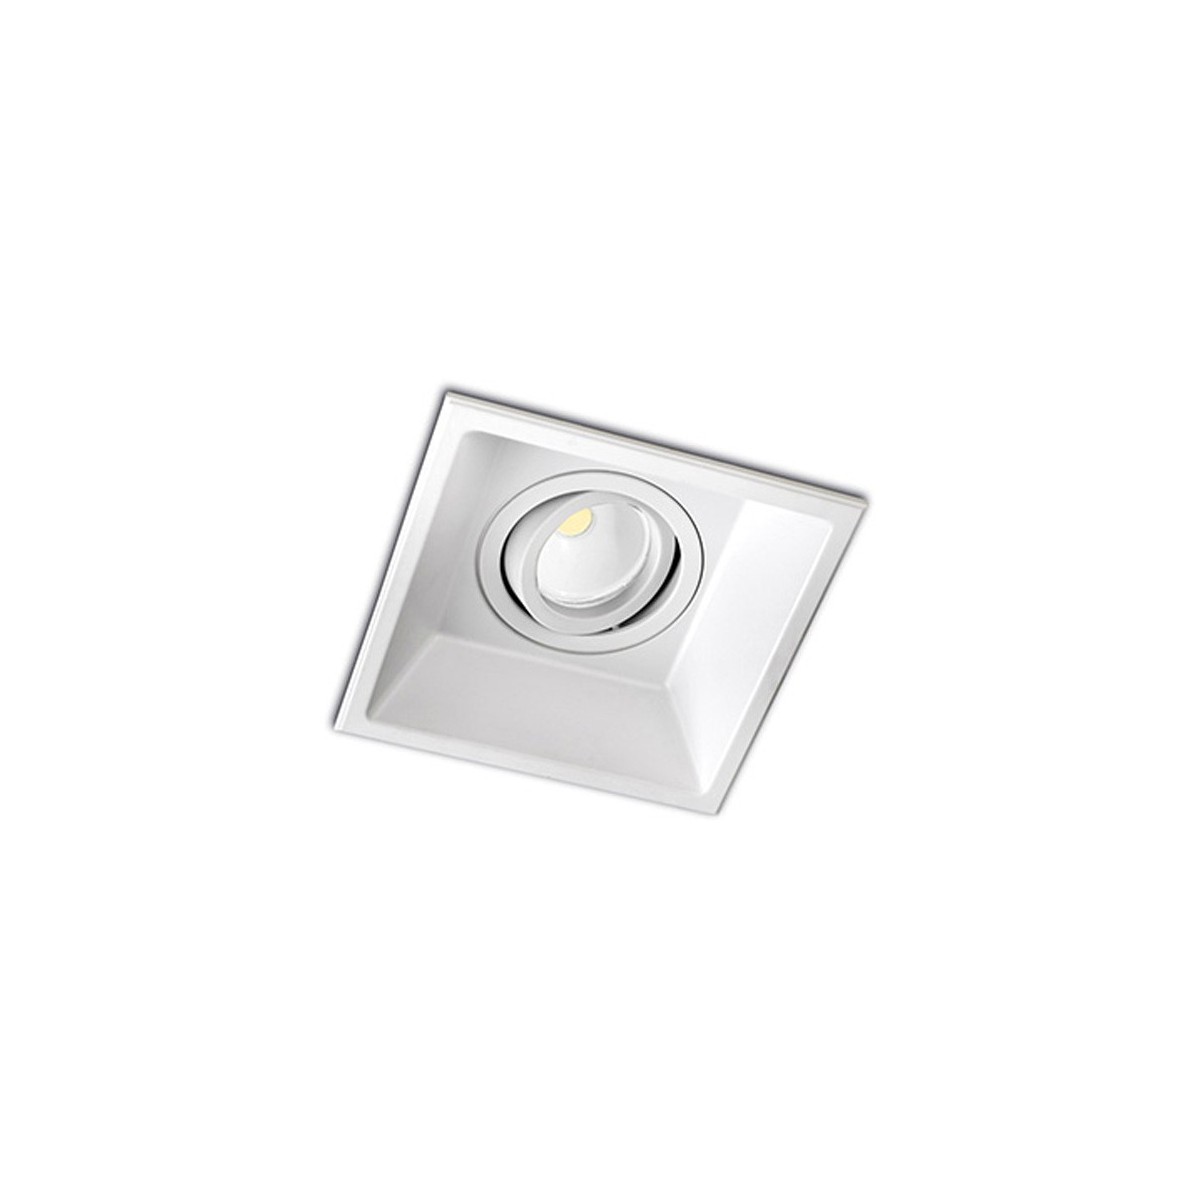 Recessed Spotlight Modular Square White